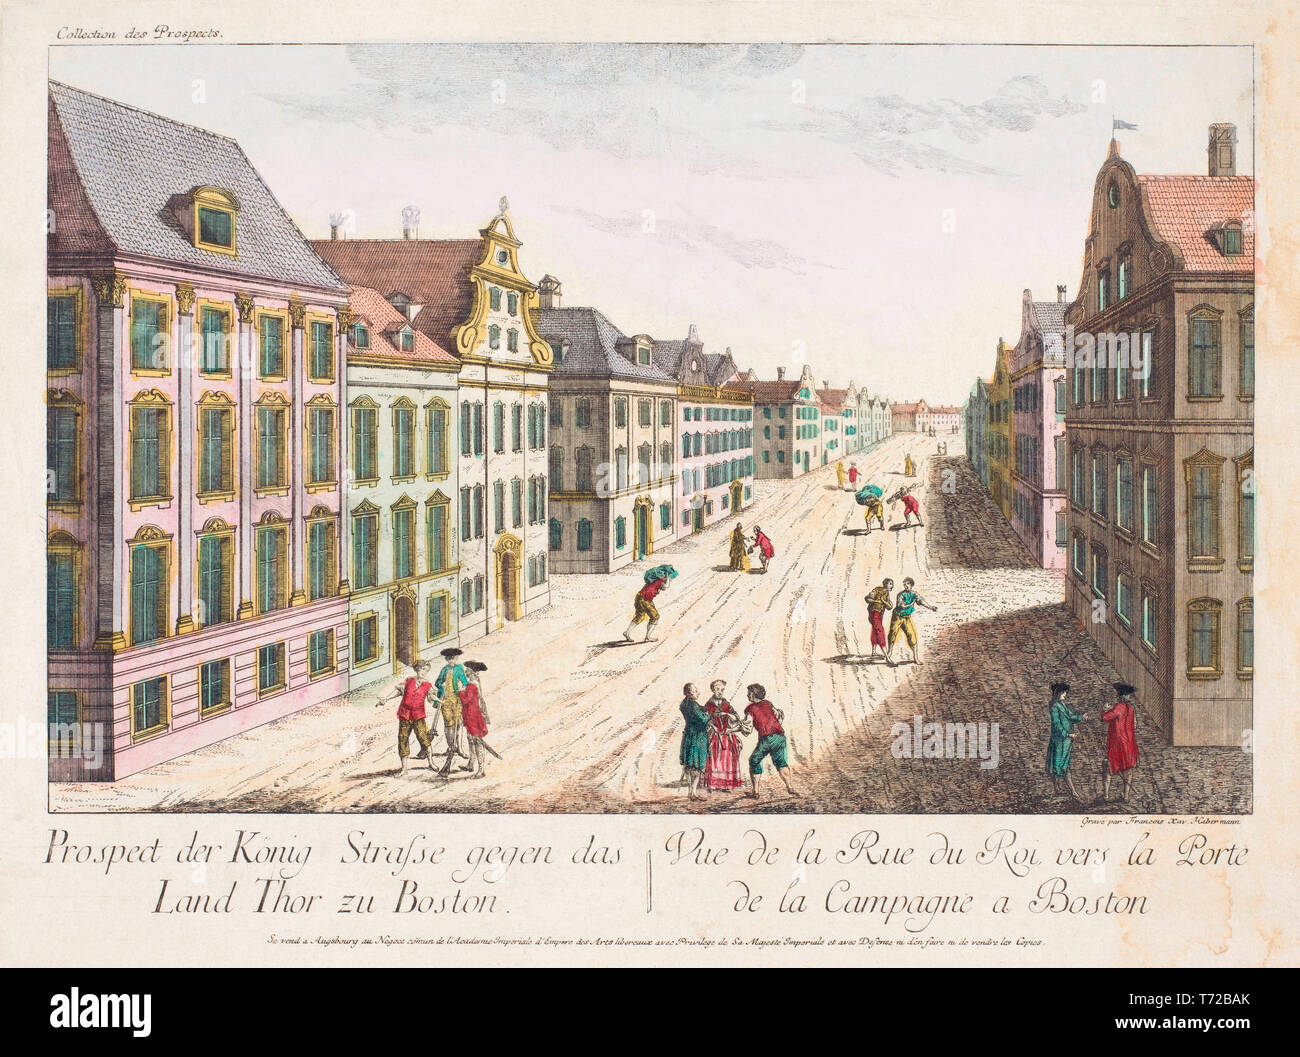 Blick auf die King Street, Boston im 18. Jahrhundert. Nach einem Hand-farbigen Drucken aus dem 18. Jahrhundert. King Street ist nun als State Street bekannt. Später einfärben. Stockfoto